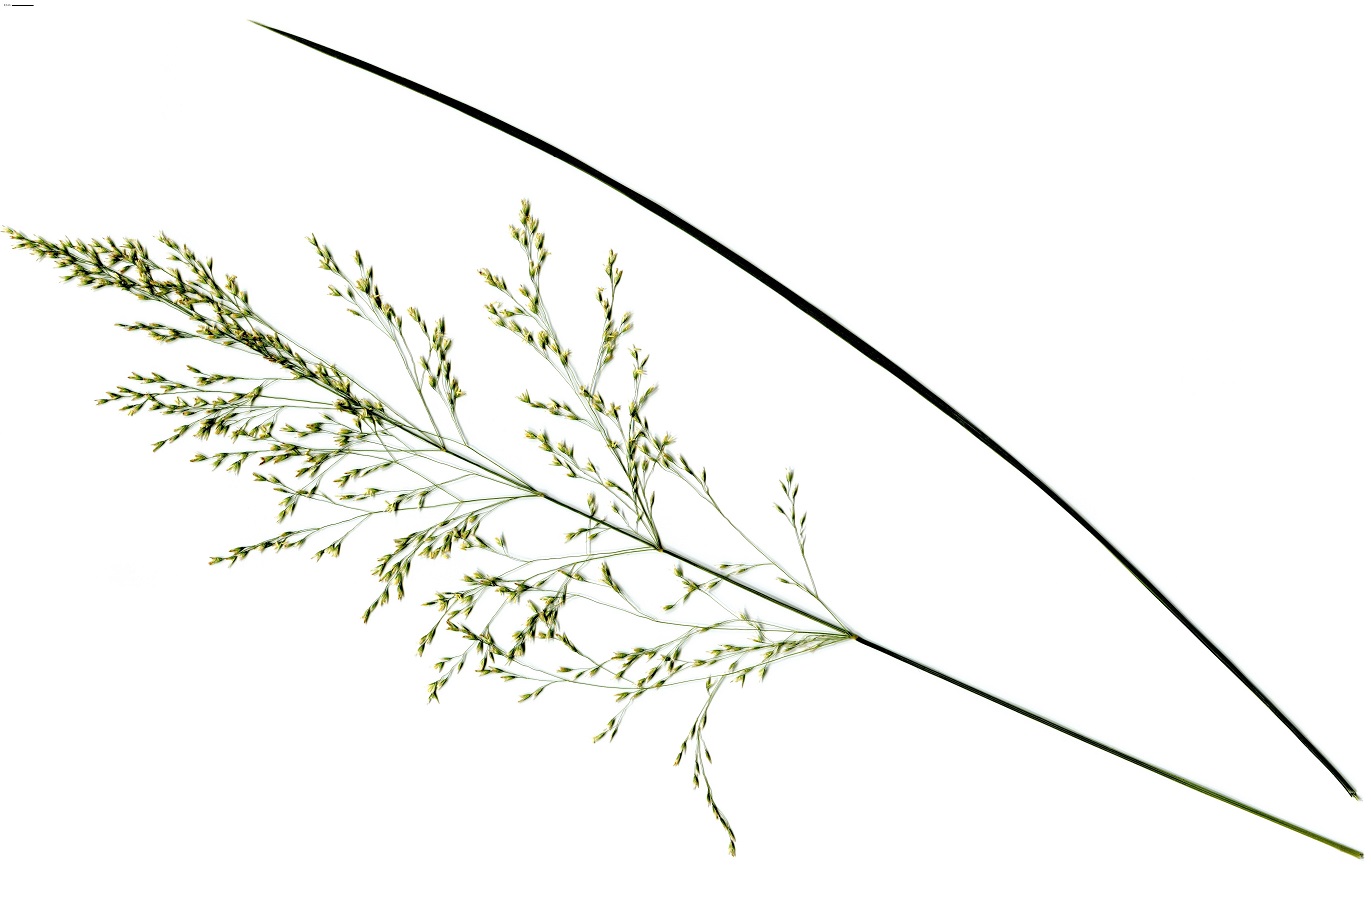 Deschampsia cespitosa subsp. cespitosa (Poaceae)